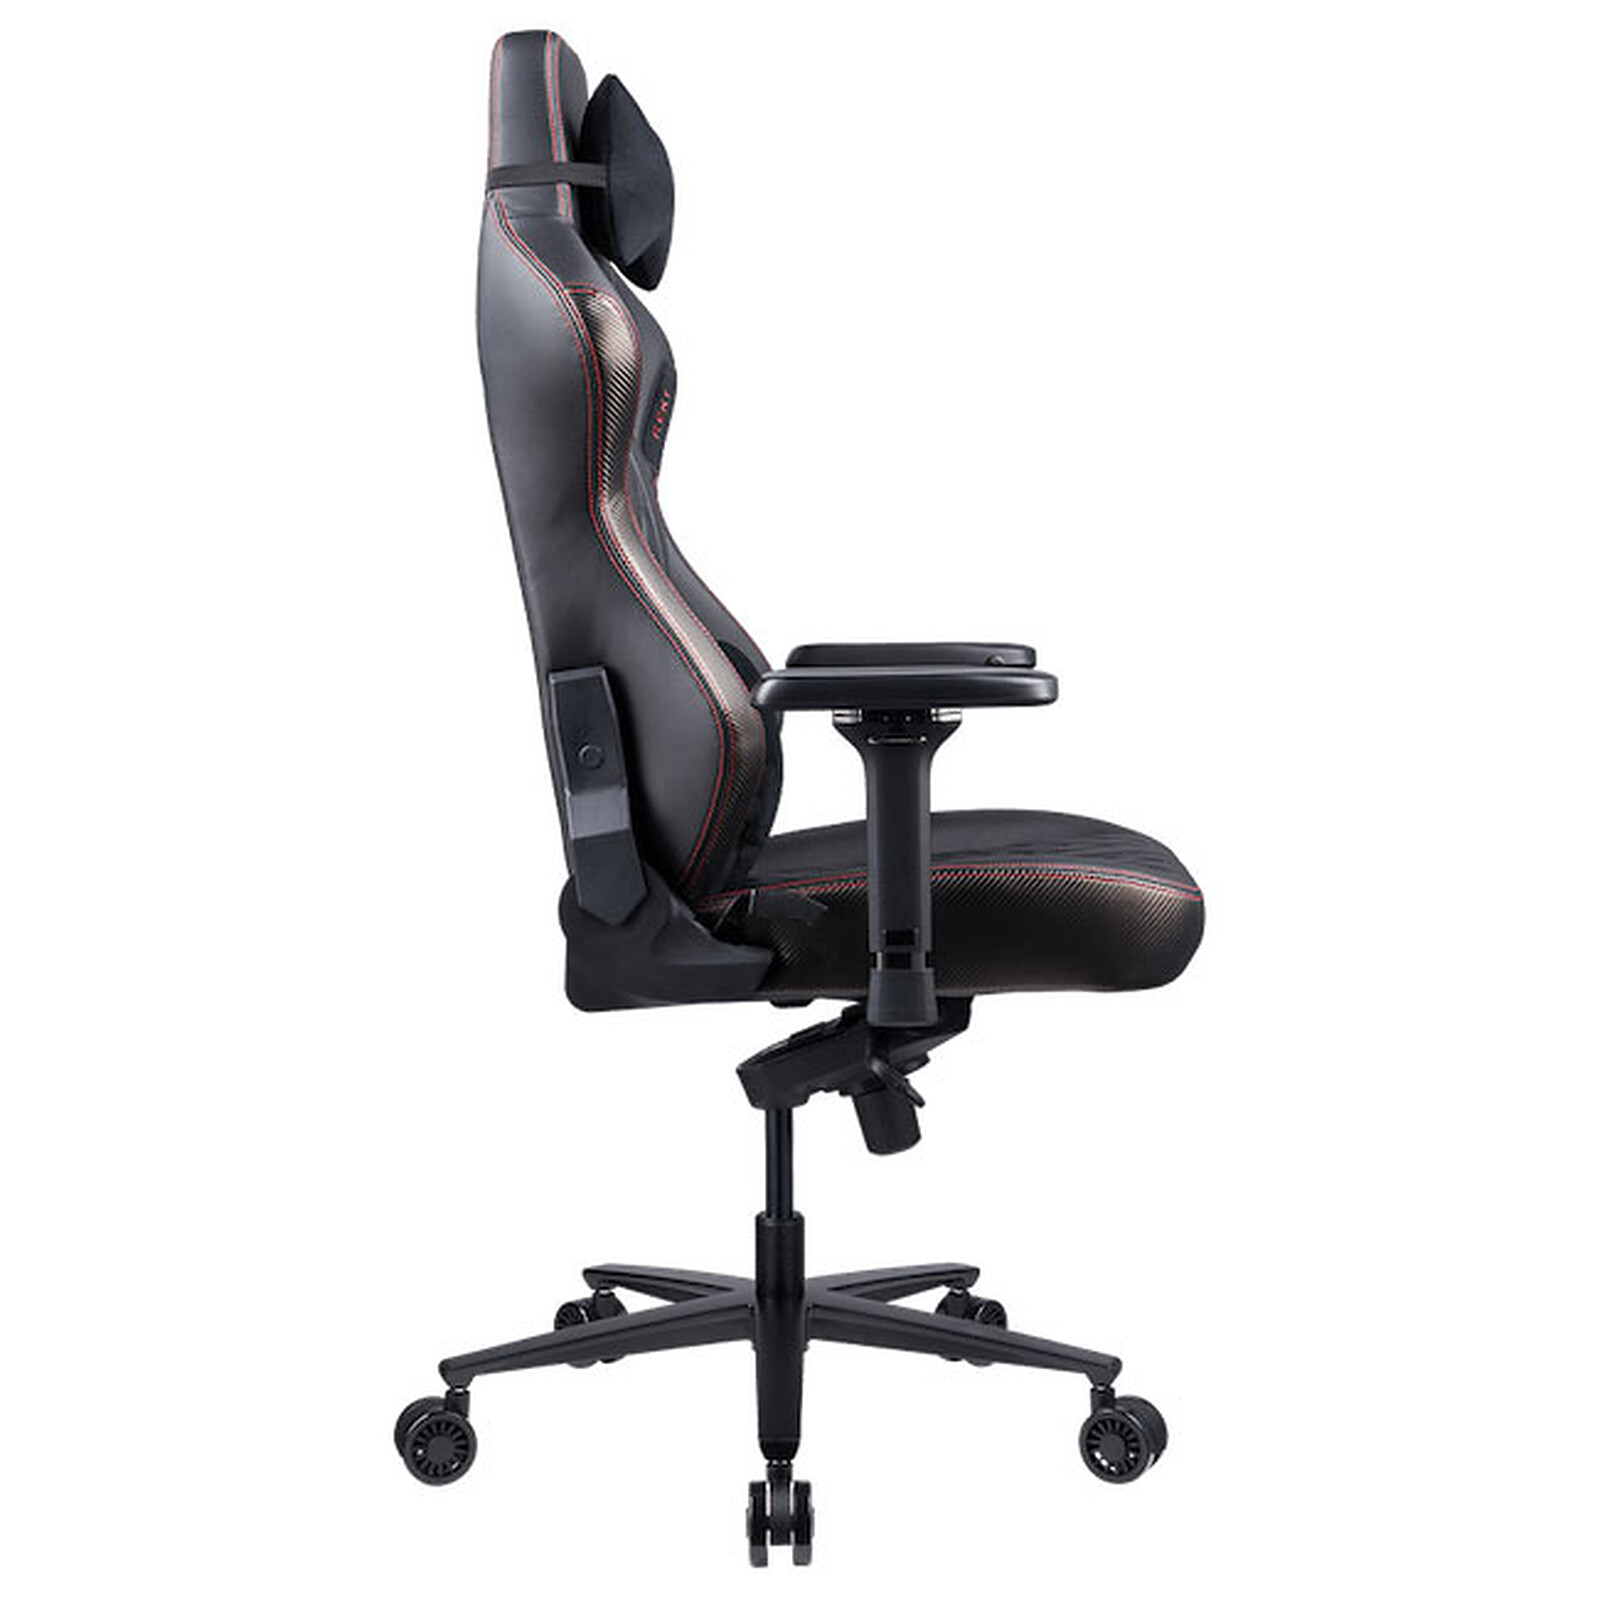 REKT LEGEND-R Business - Gaming chair - LDLC 3-year warranty